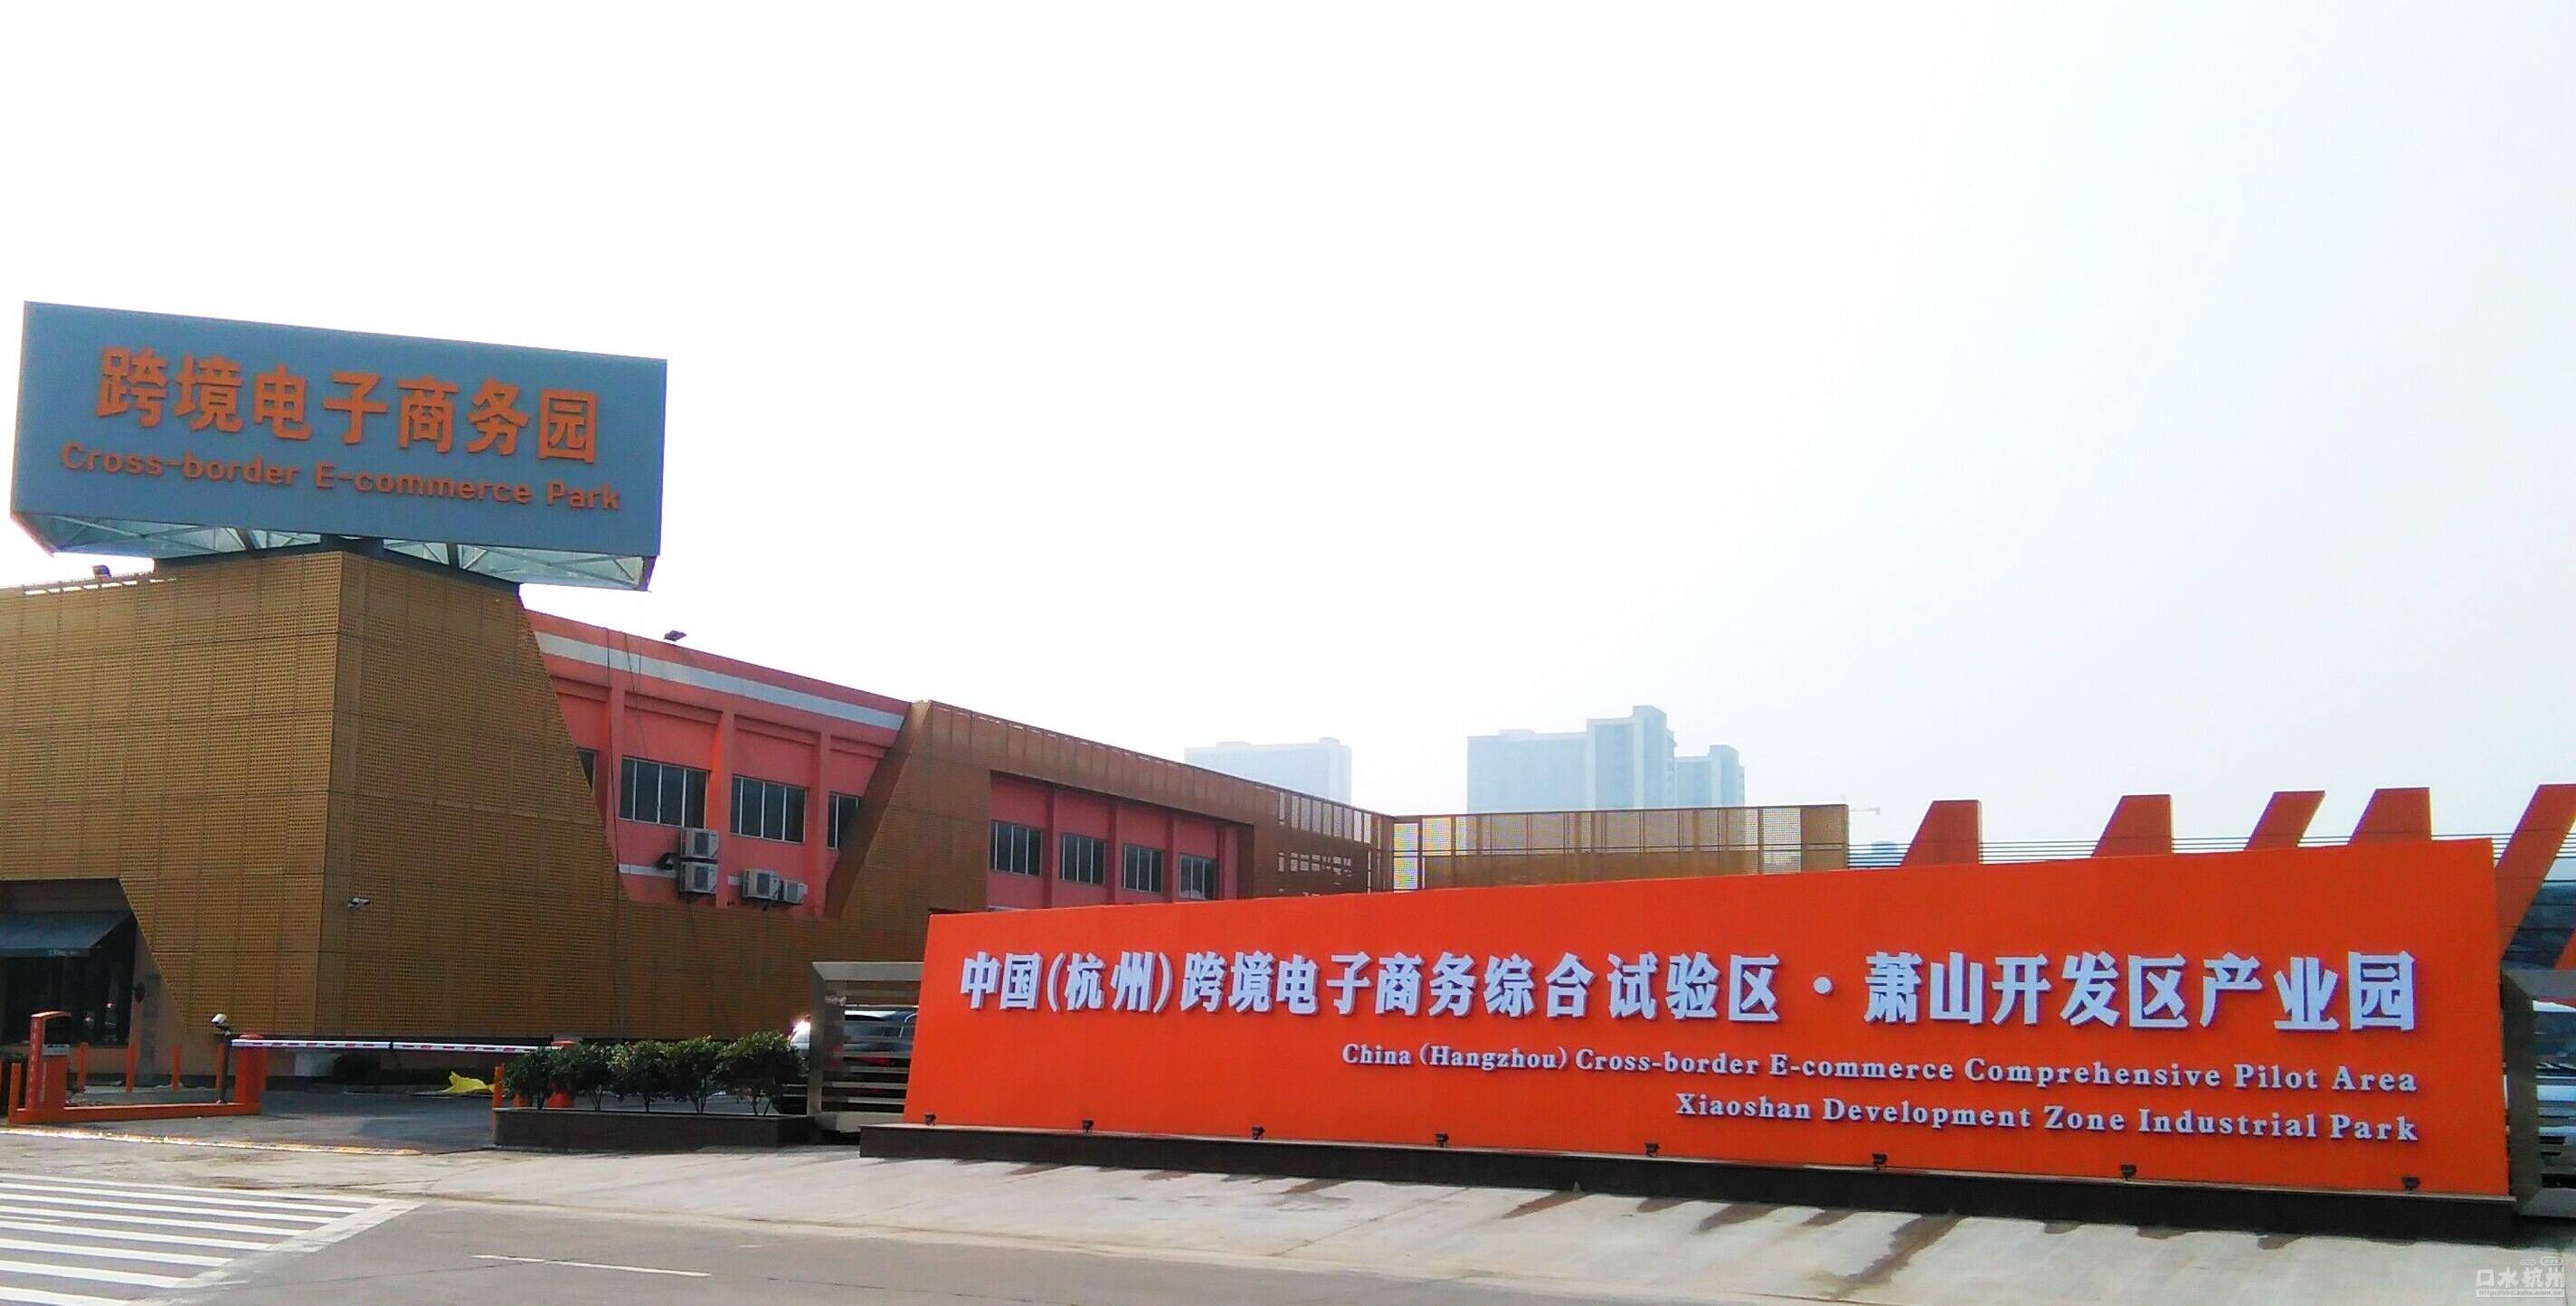 中国杭州跨境电商产业园萧山开发区园区即将开张